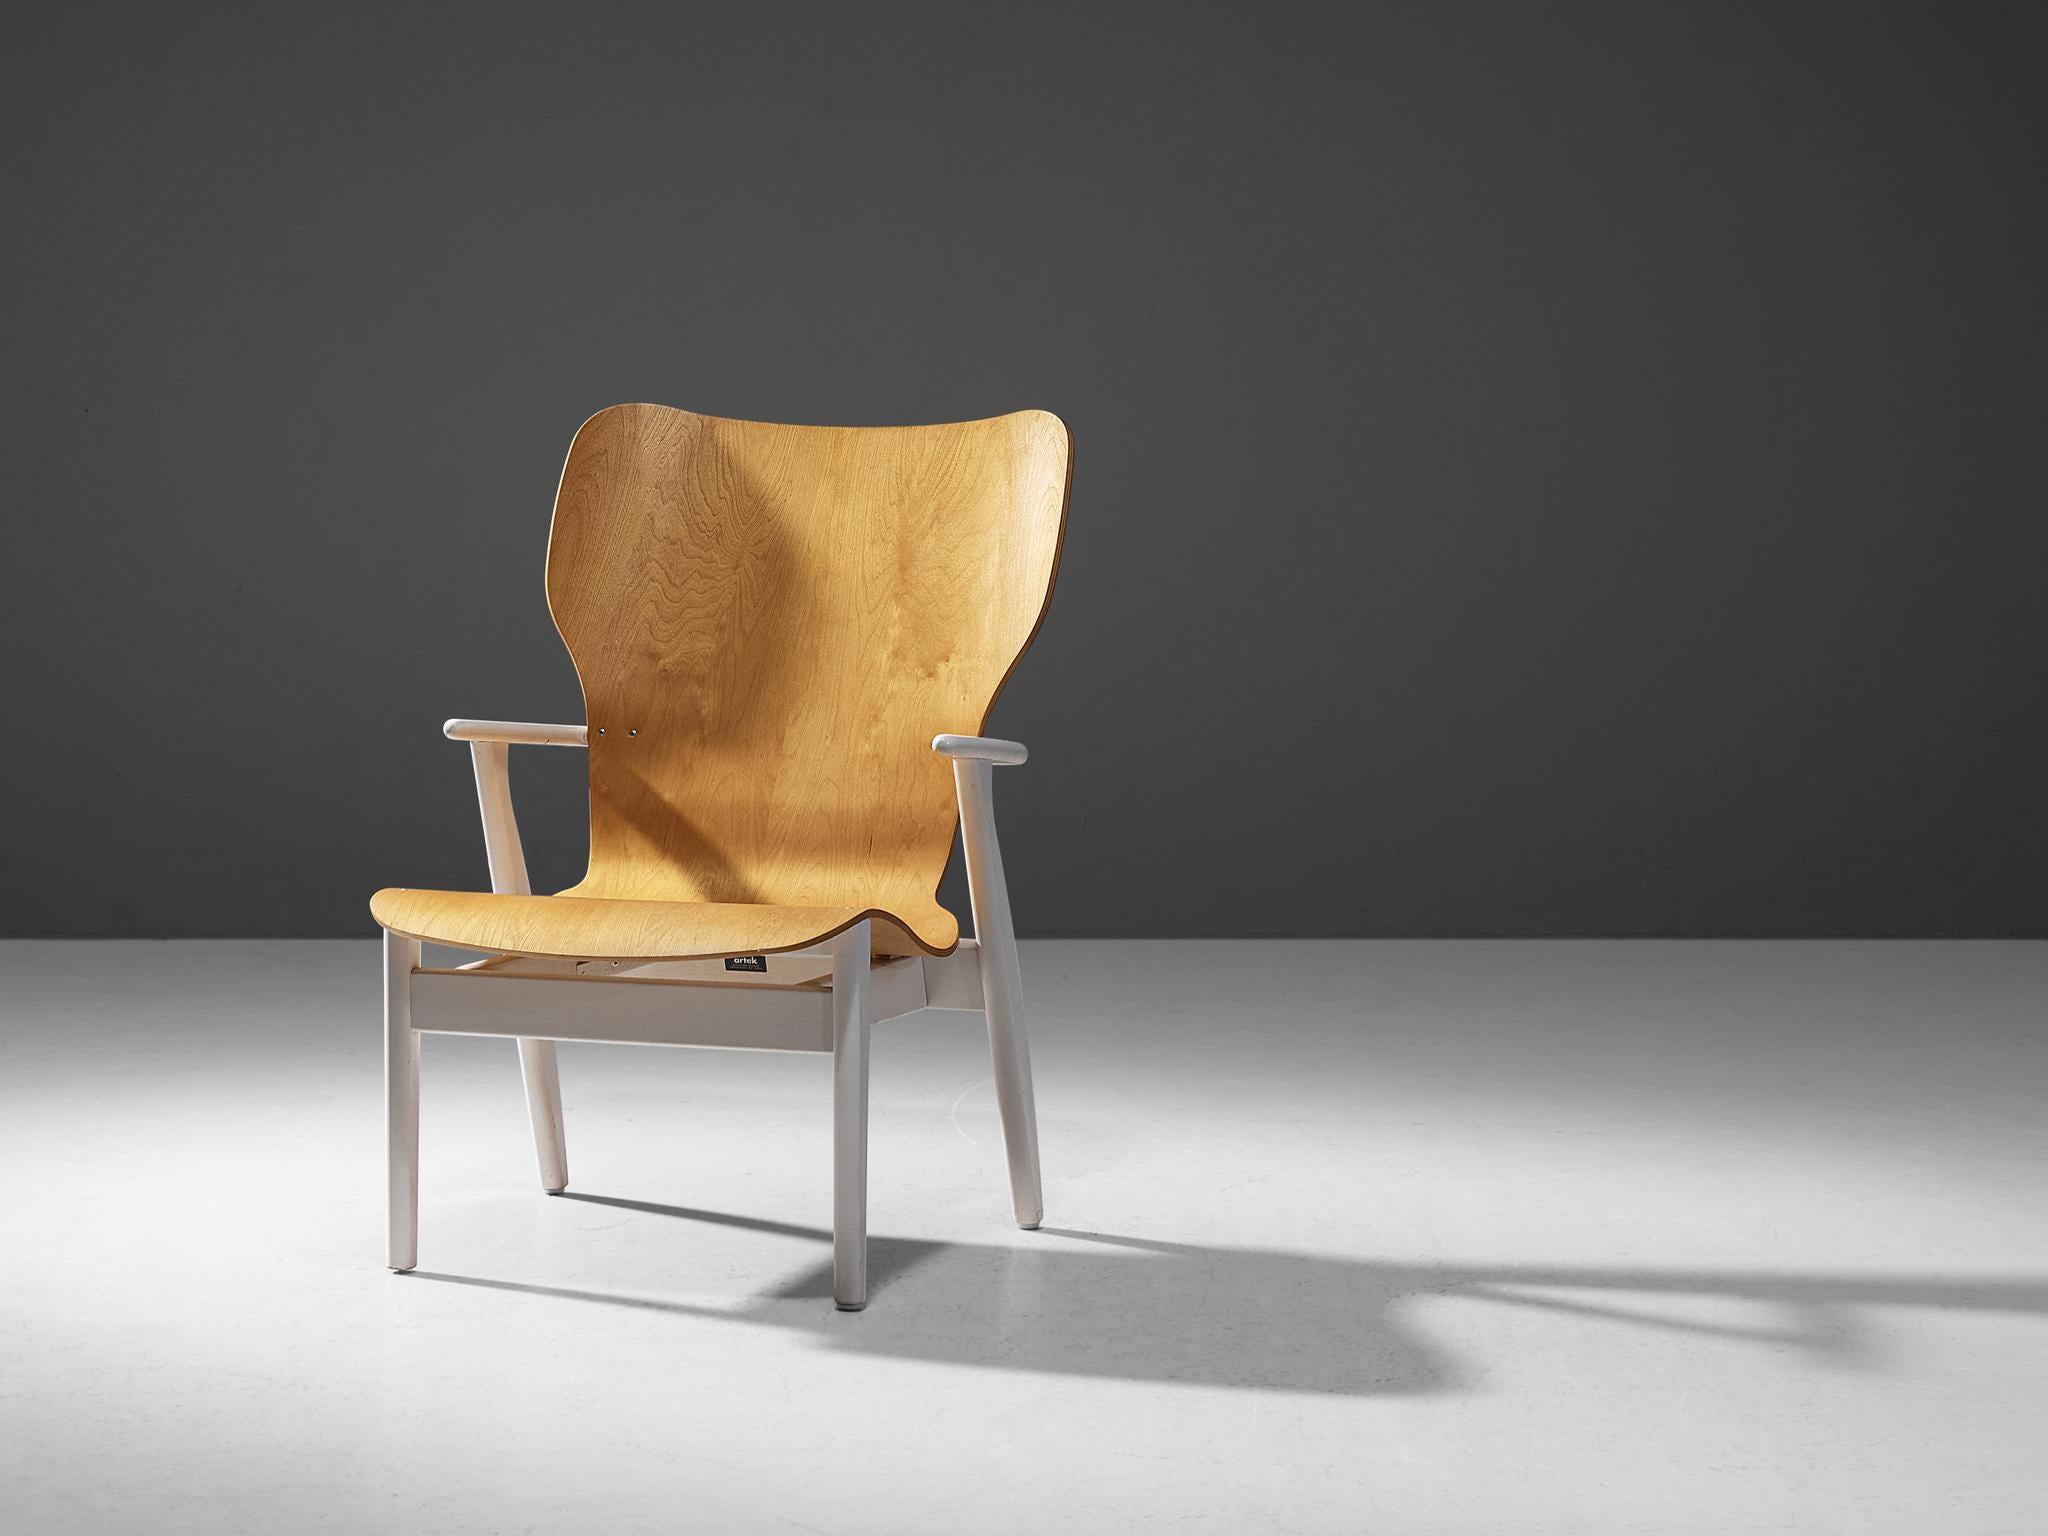 Ilmari Tapiovaara pour Artek, chaise longue modèle 'Domus Lux', bois laqué, bouleau, Finlande, conçue en 1948, production récente. 

Cette chaise longue merveilleusement sculptée se caractérise par des lignes organiques combinées à des formes